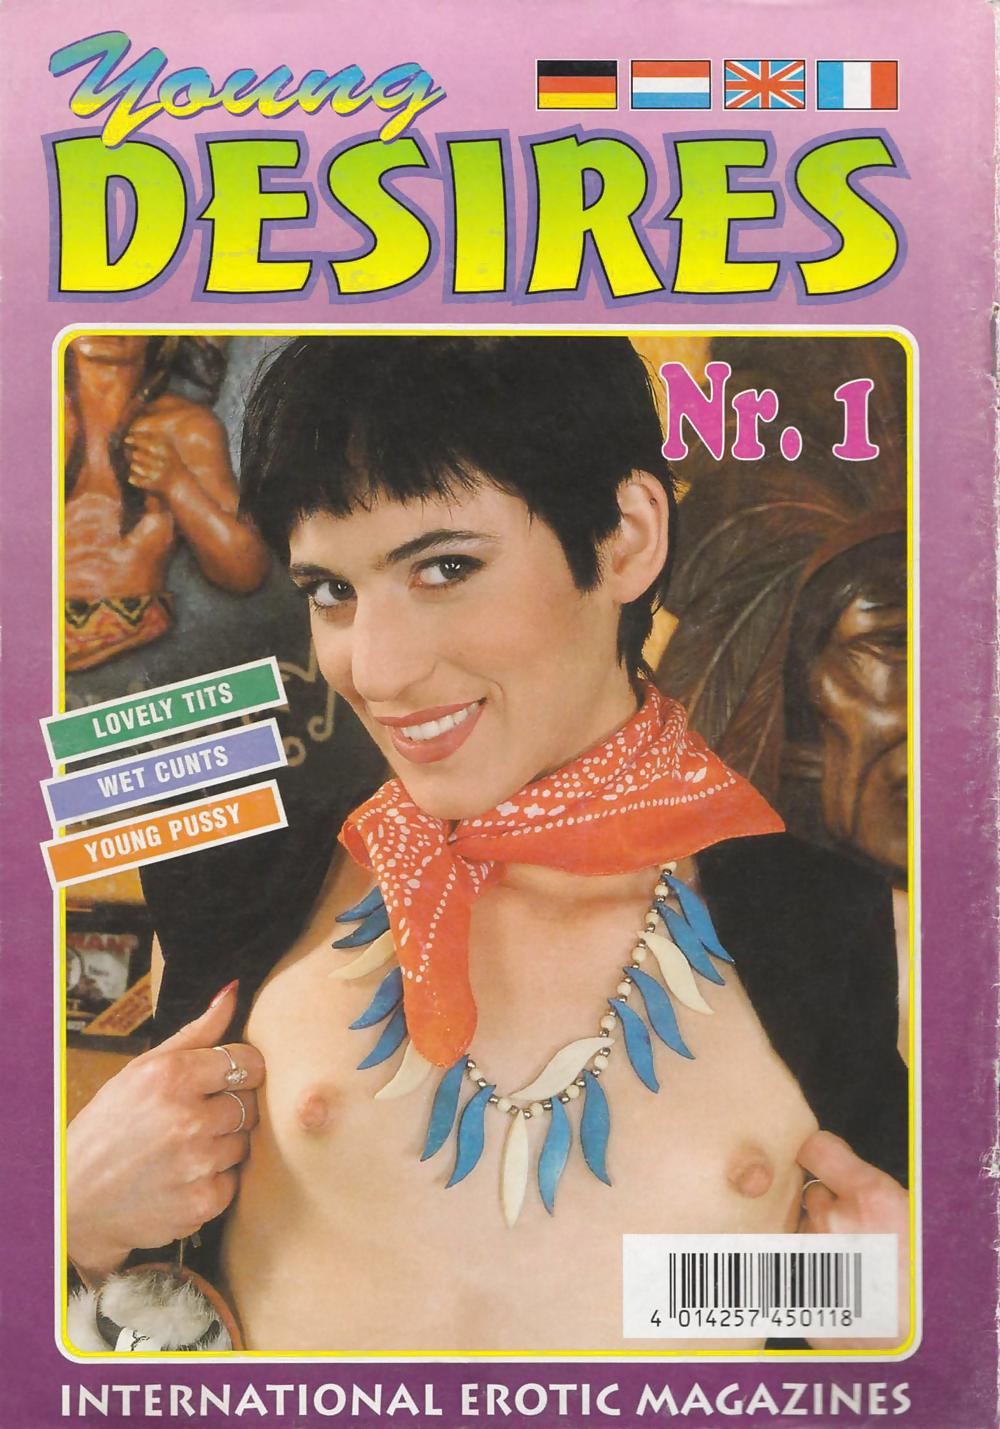 Justine La Pornstar Nelle #1651194